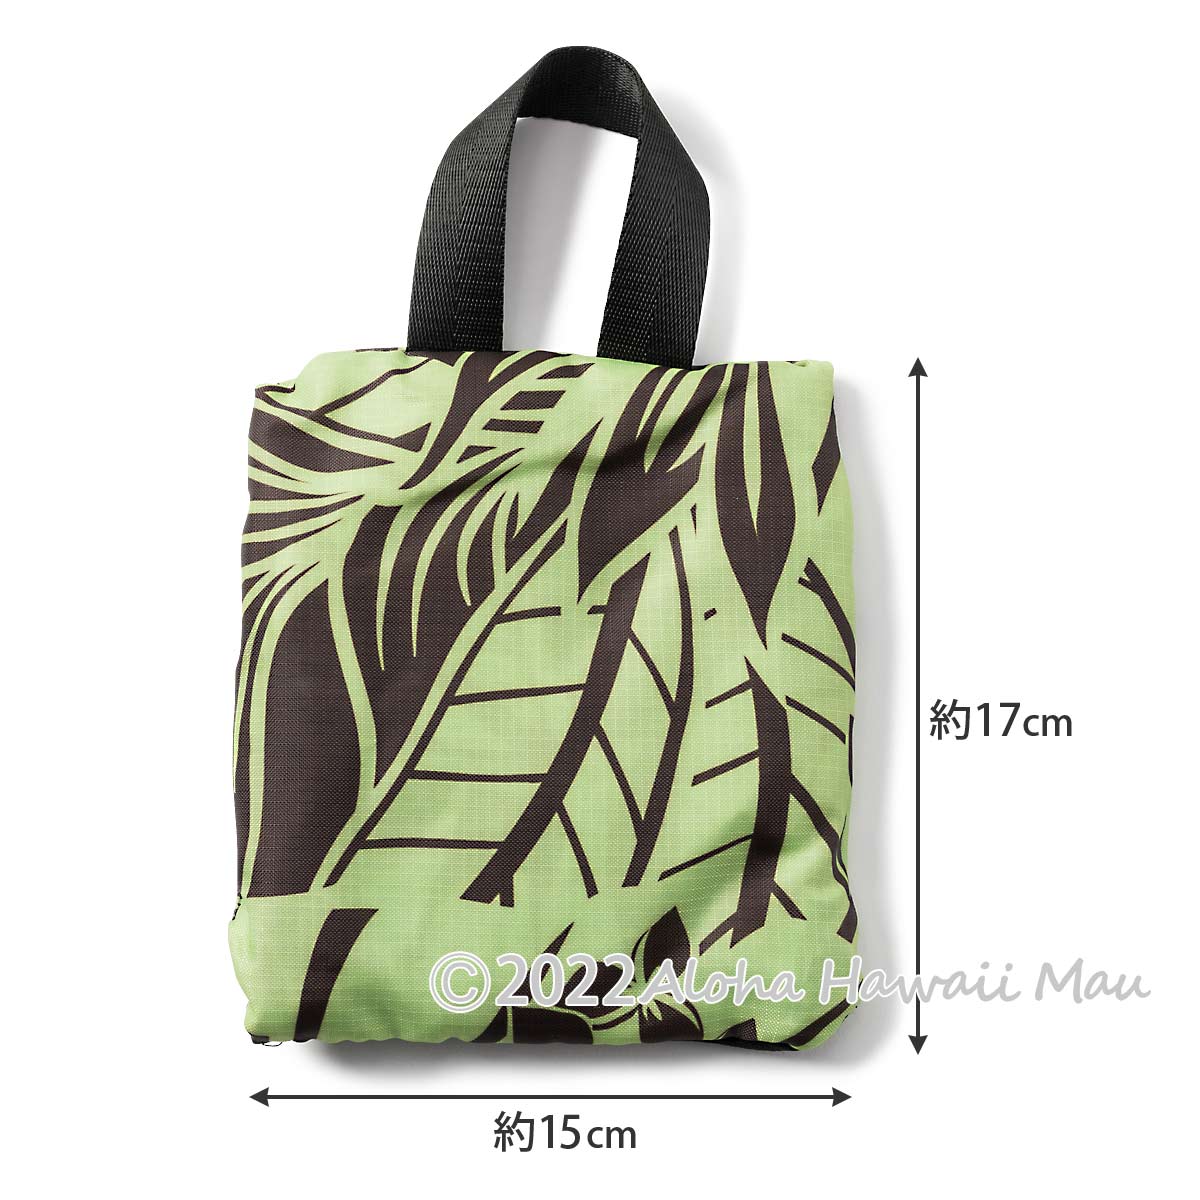 ハワイアンエコバッグ 折りたたみトロピカル 巾着バッグ グリーン